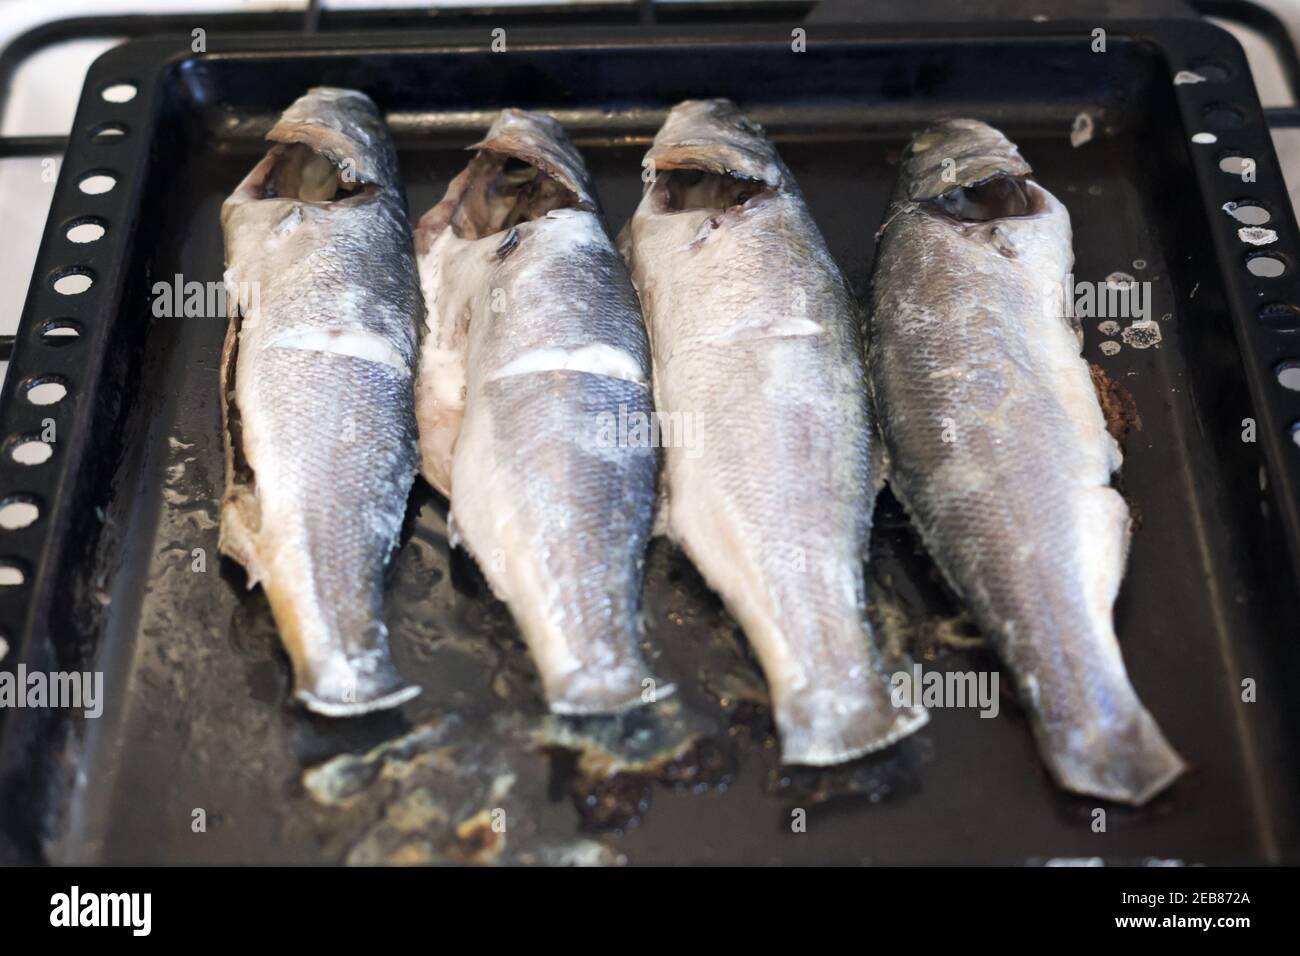 cocido en el horno de lubina chilena. cuatro pescados de tamaño medio de color gris azulado. Un exquisito plato de delicioso pescado raro Foto de stock